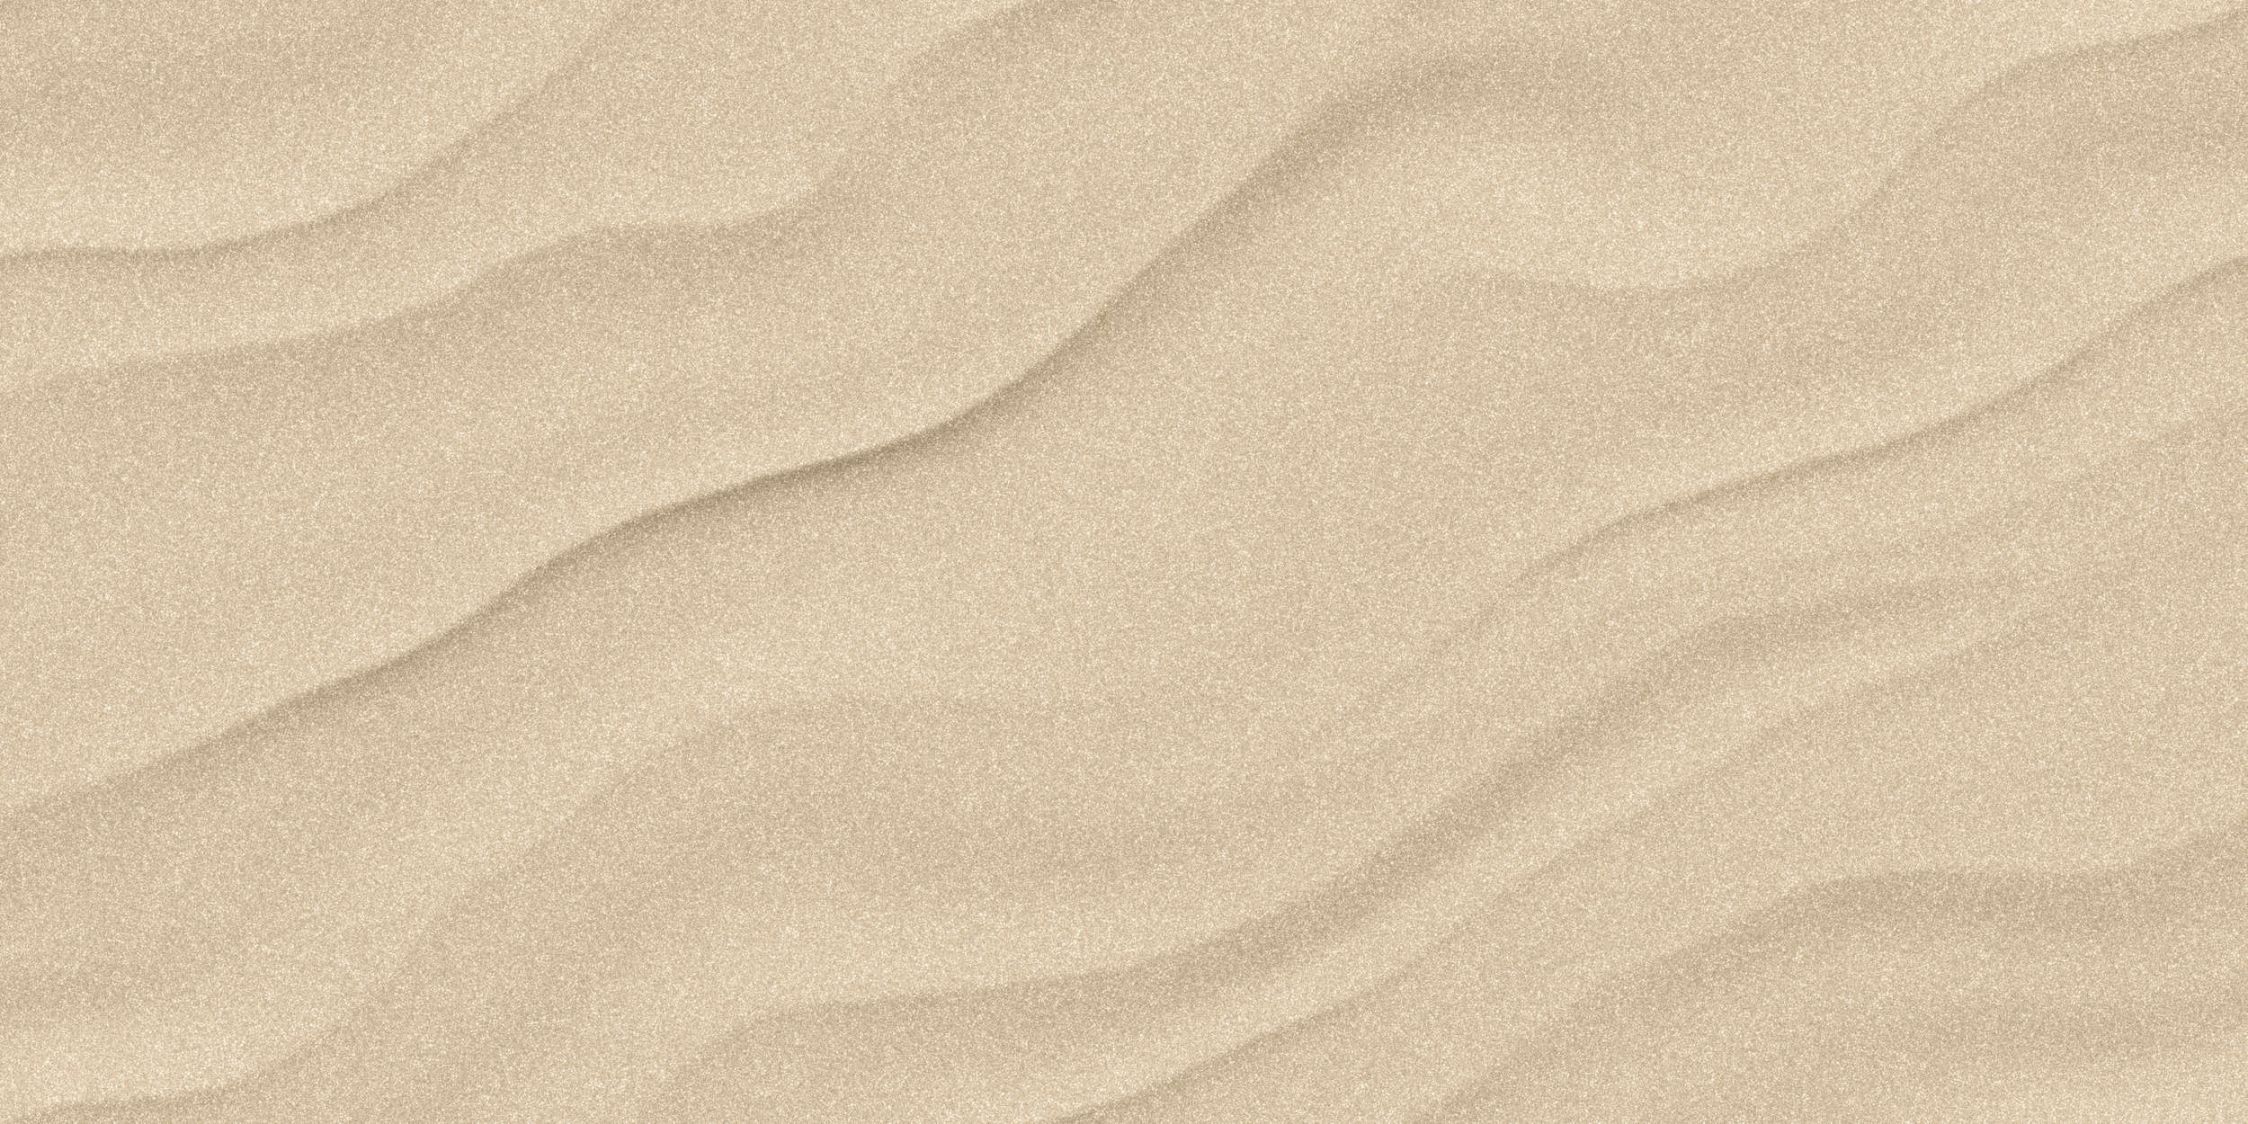             Wandschildering »sahara« - Zandige woestijnvloer met handgeschept papierlook - Matte, gladde vliesstof
        